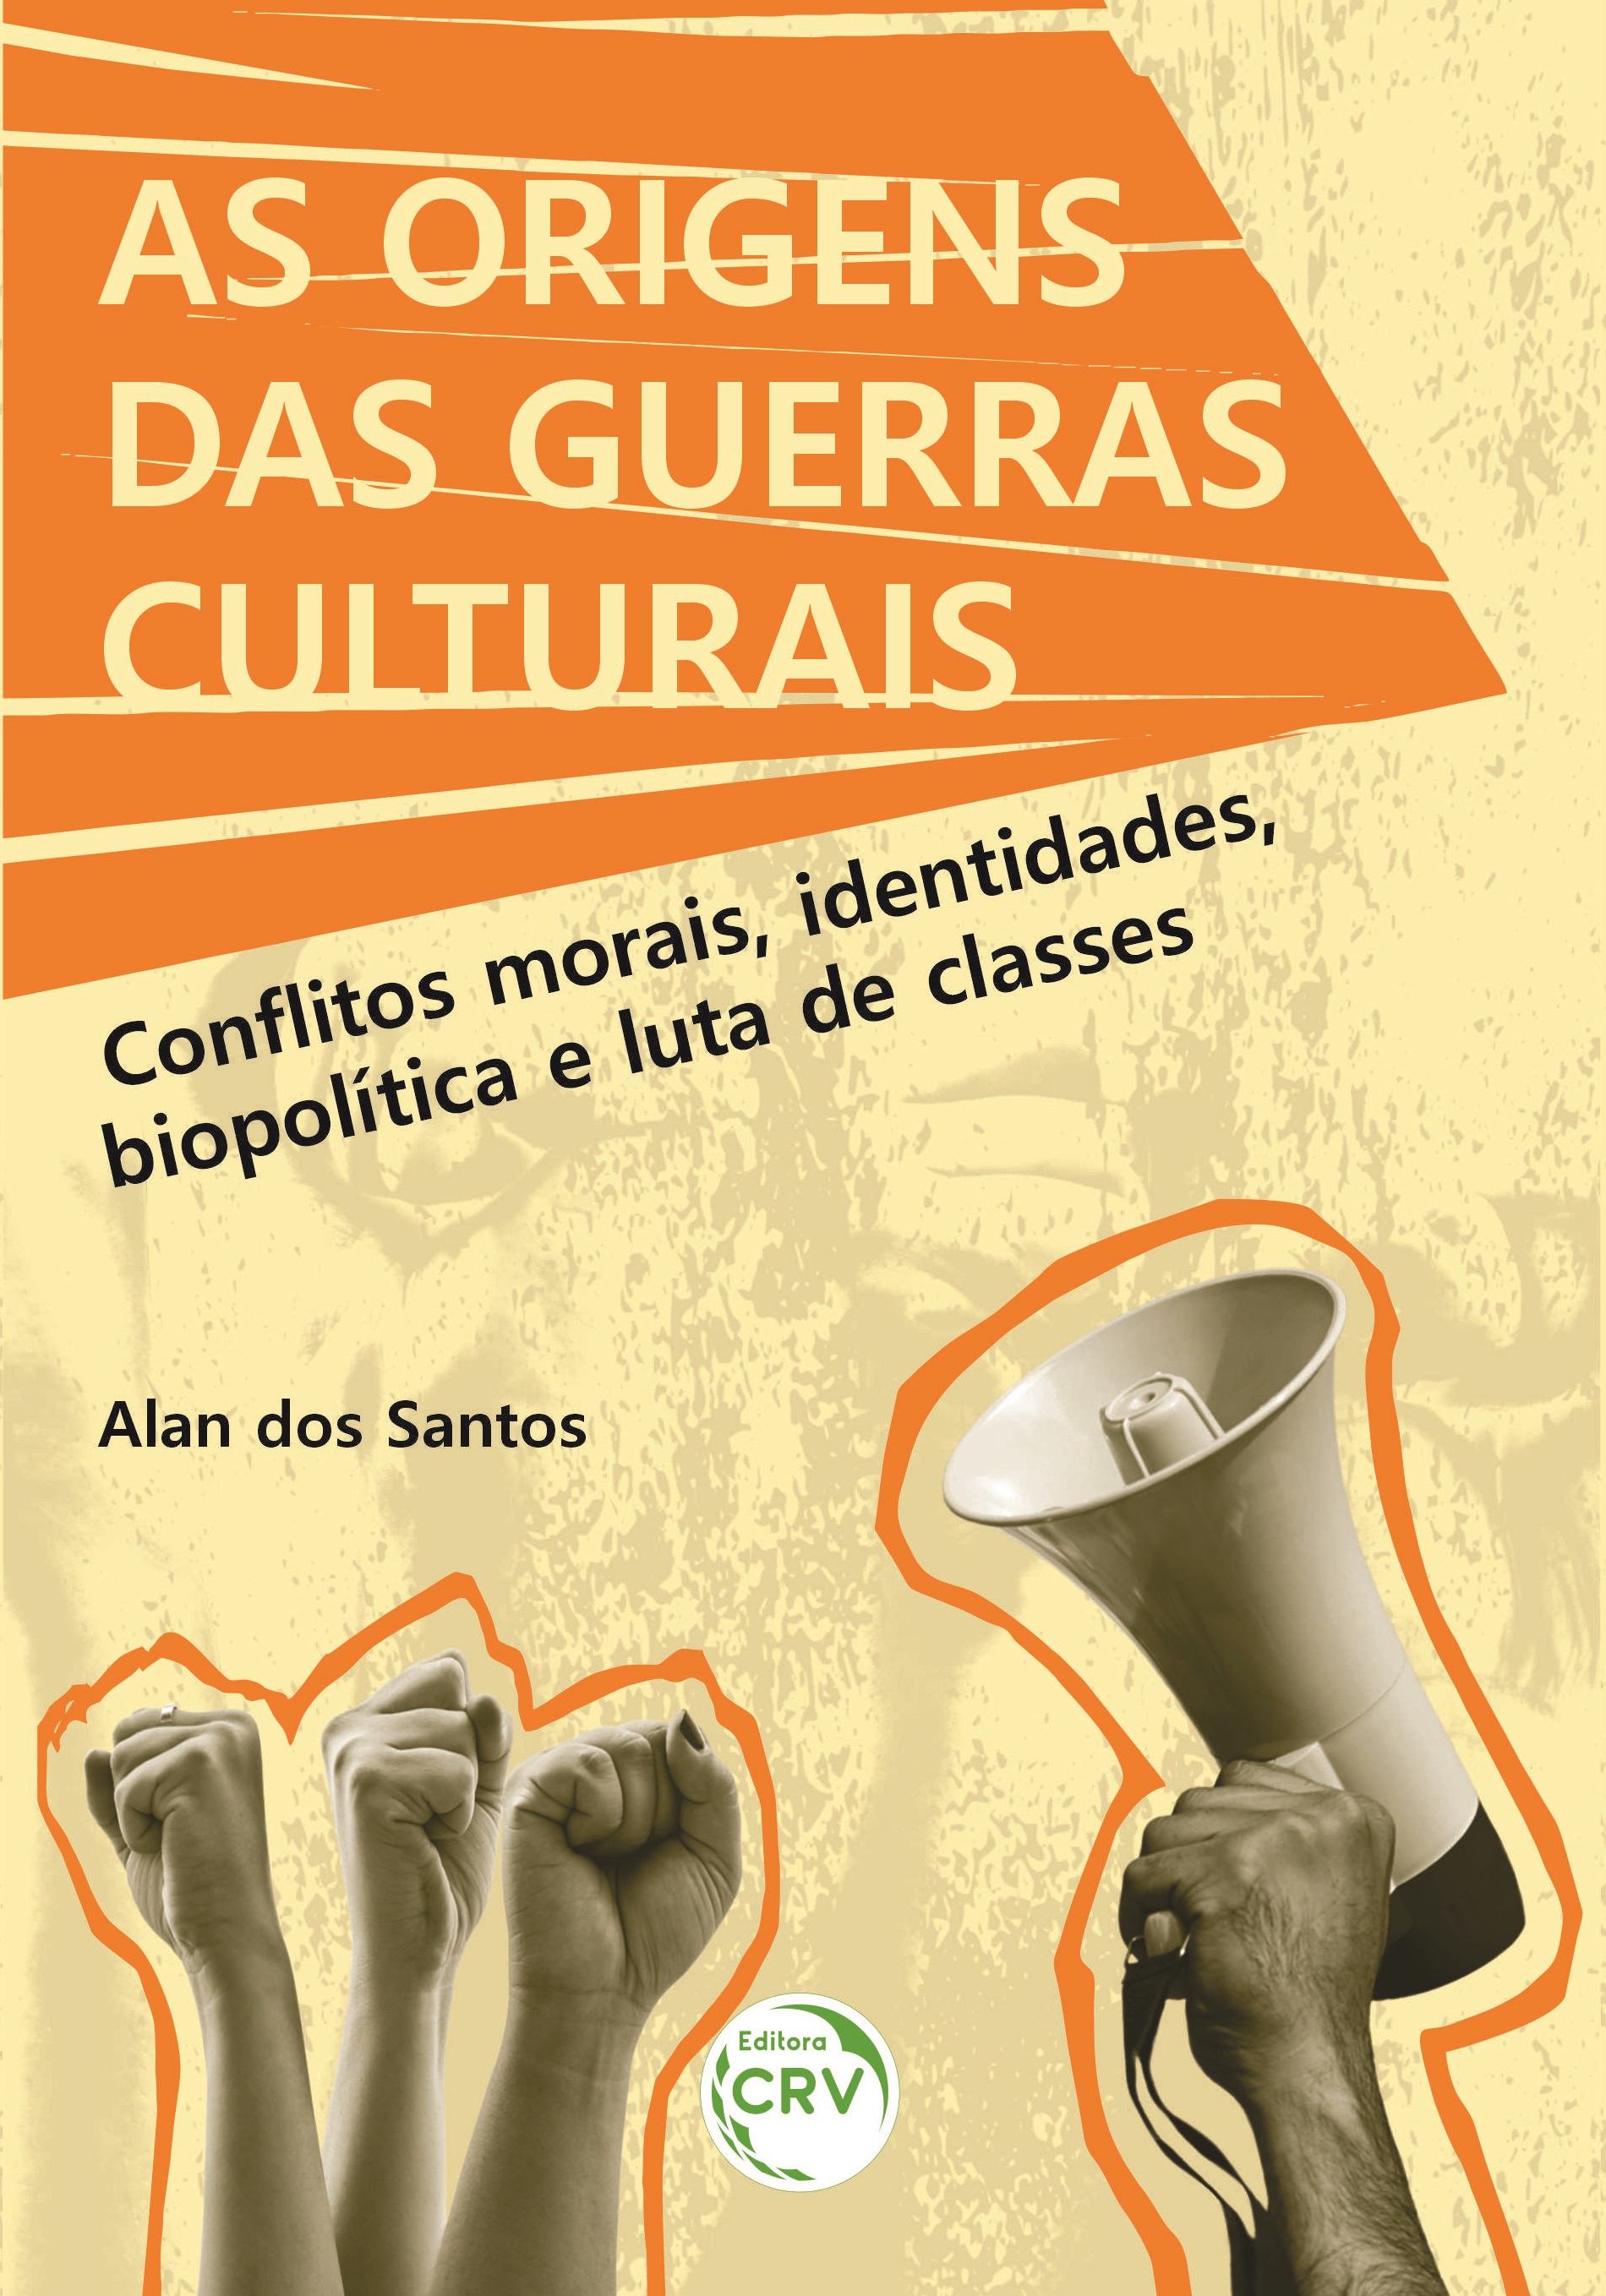 Capa do livro: AS ORIGENS DAS GUERRAS CULTURAIS:<br> Conflitos morais, identidades, biopolítica e luta de classes